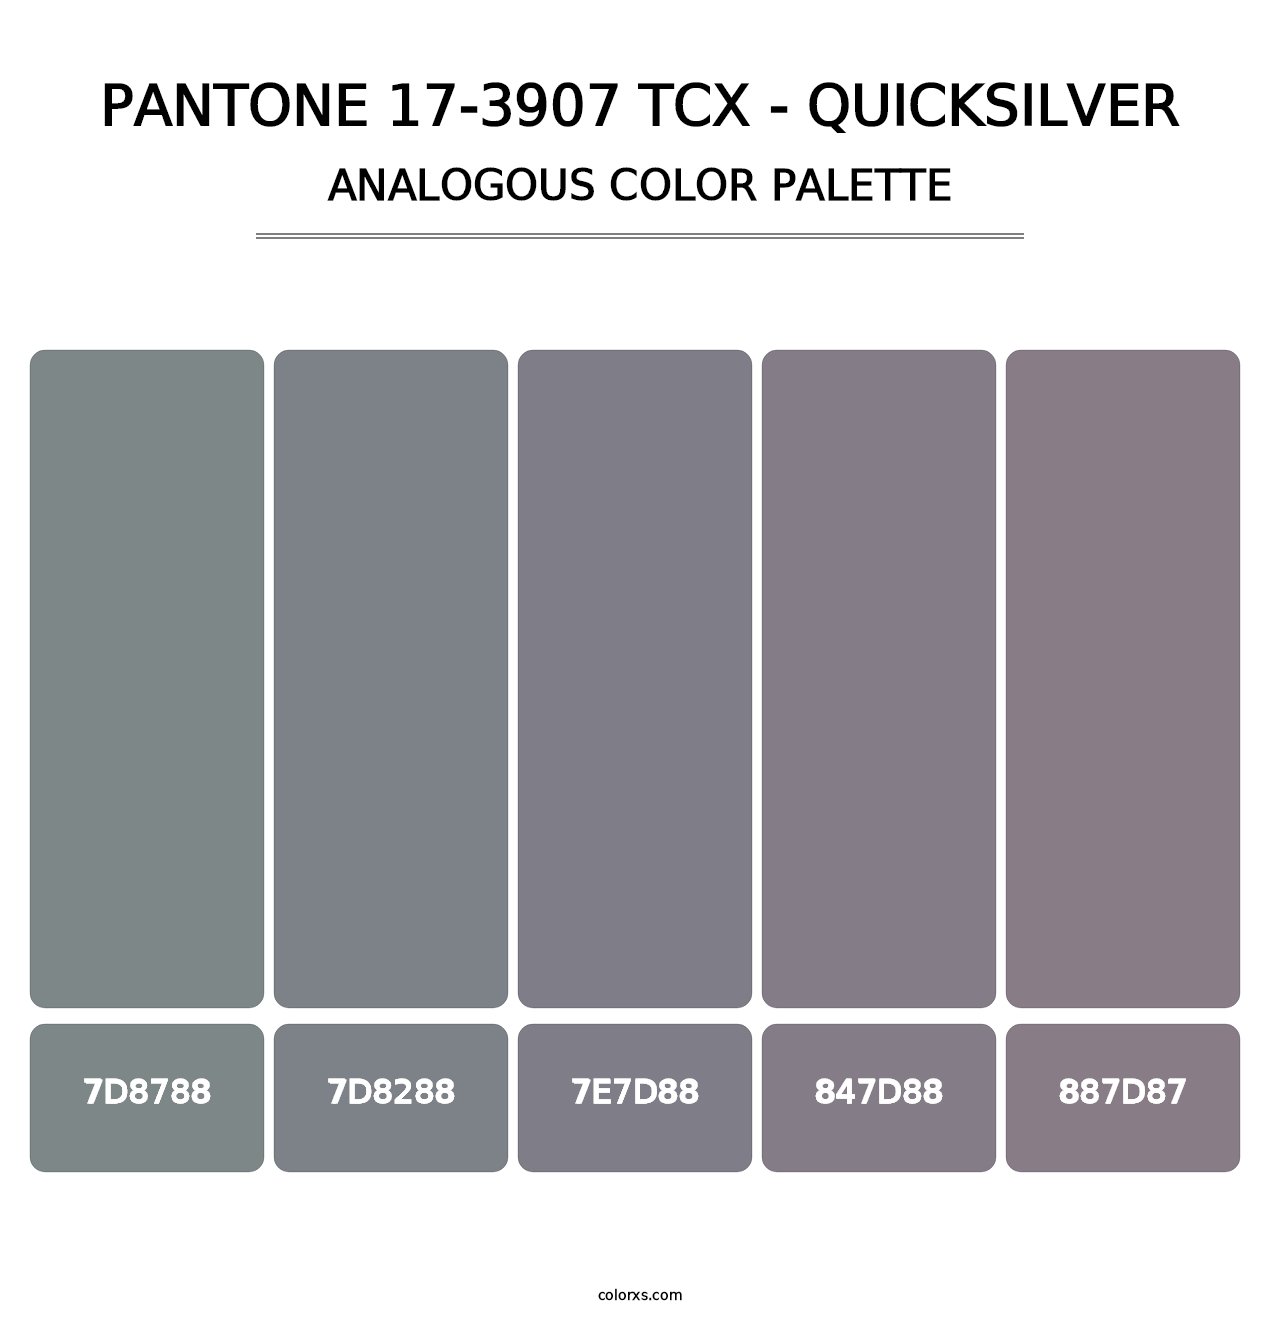 PANTONE 17-3907 TCX - Quicksilver - Analogous Color Palette